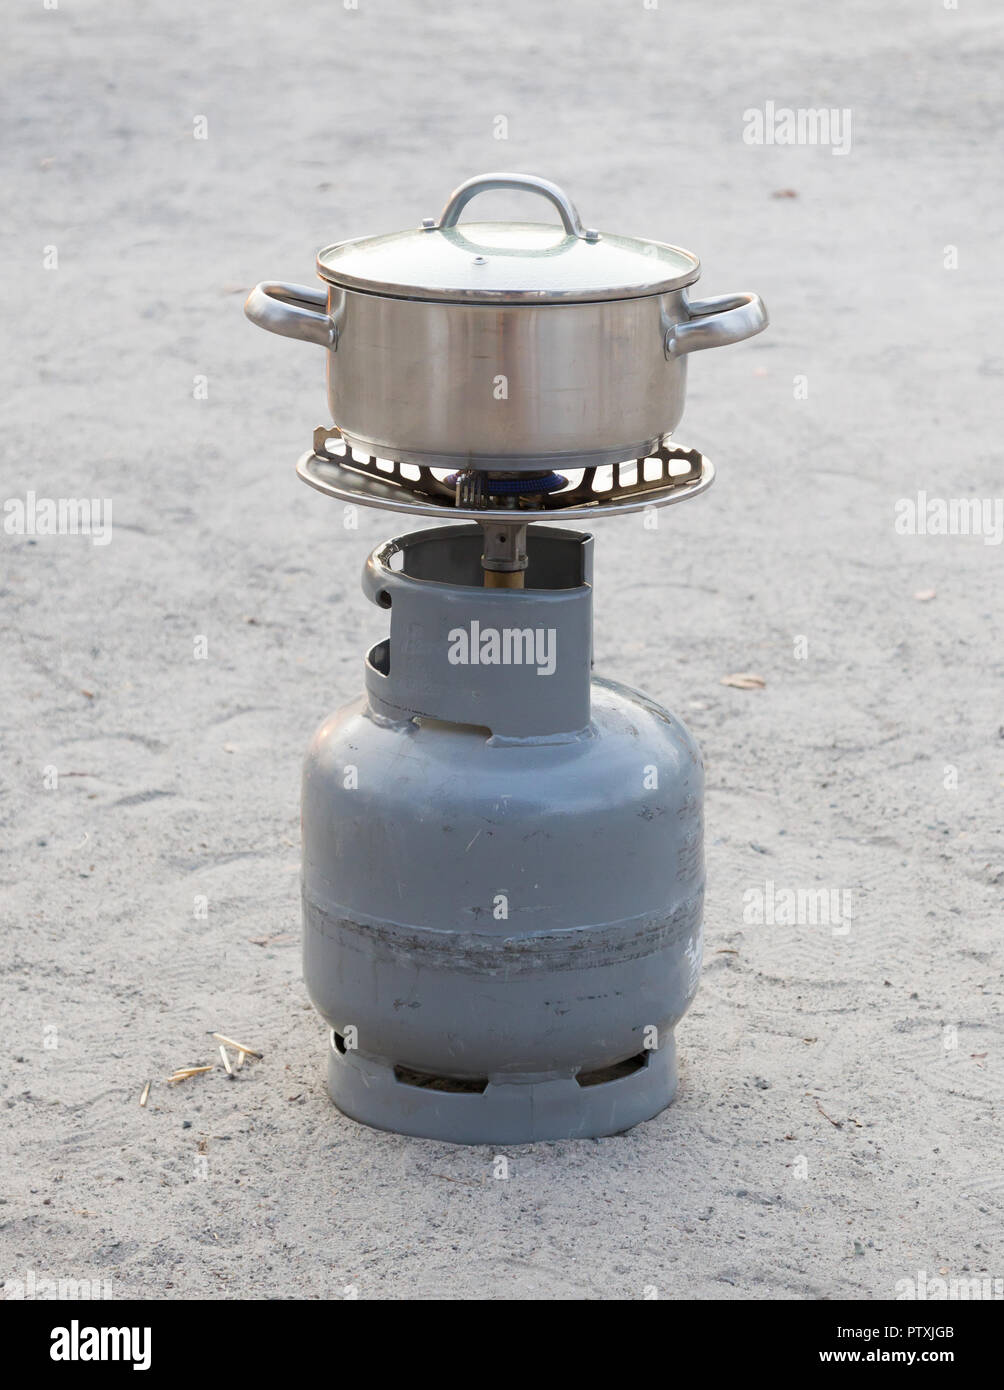 Kochen in der Wüste - Einfaches Gas Flasche mit Brenner Stockfoto